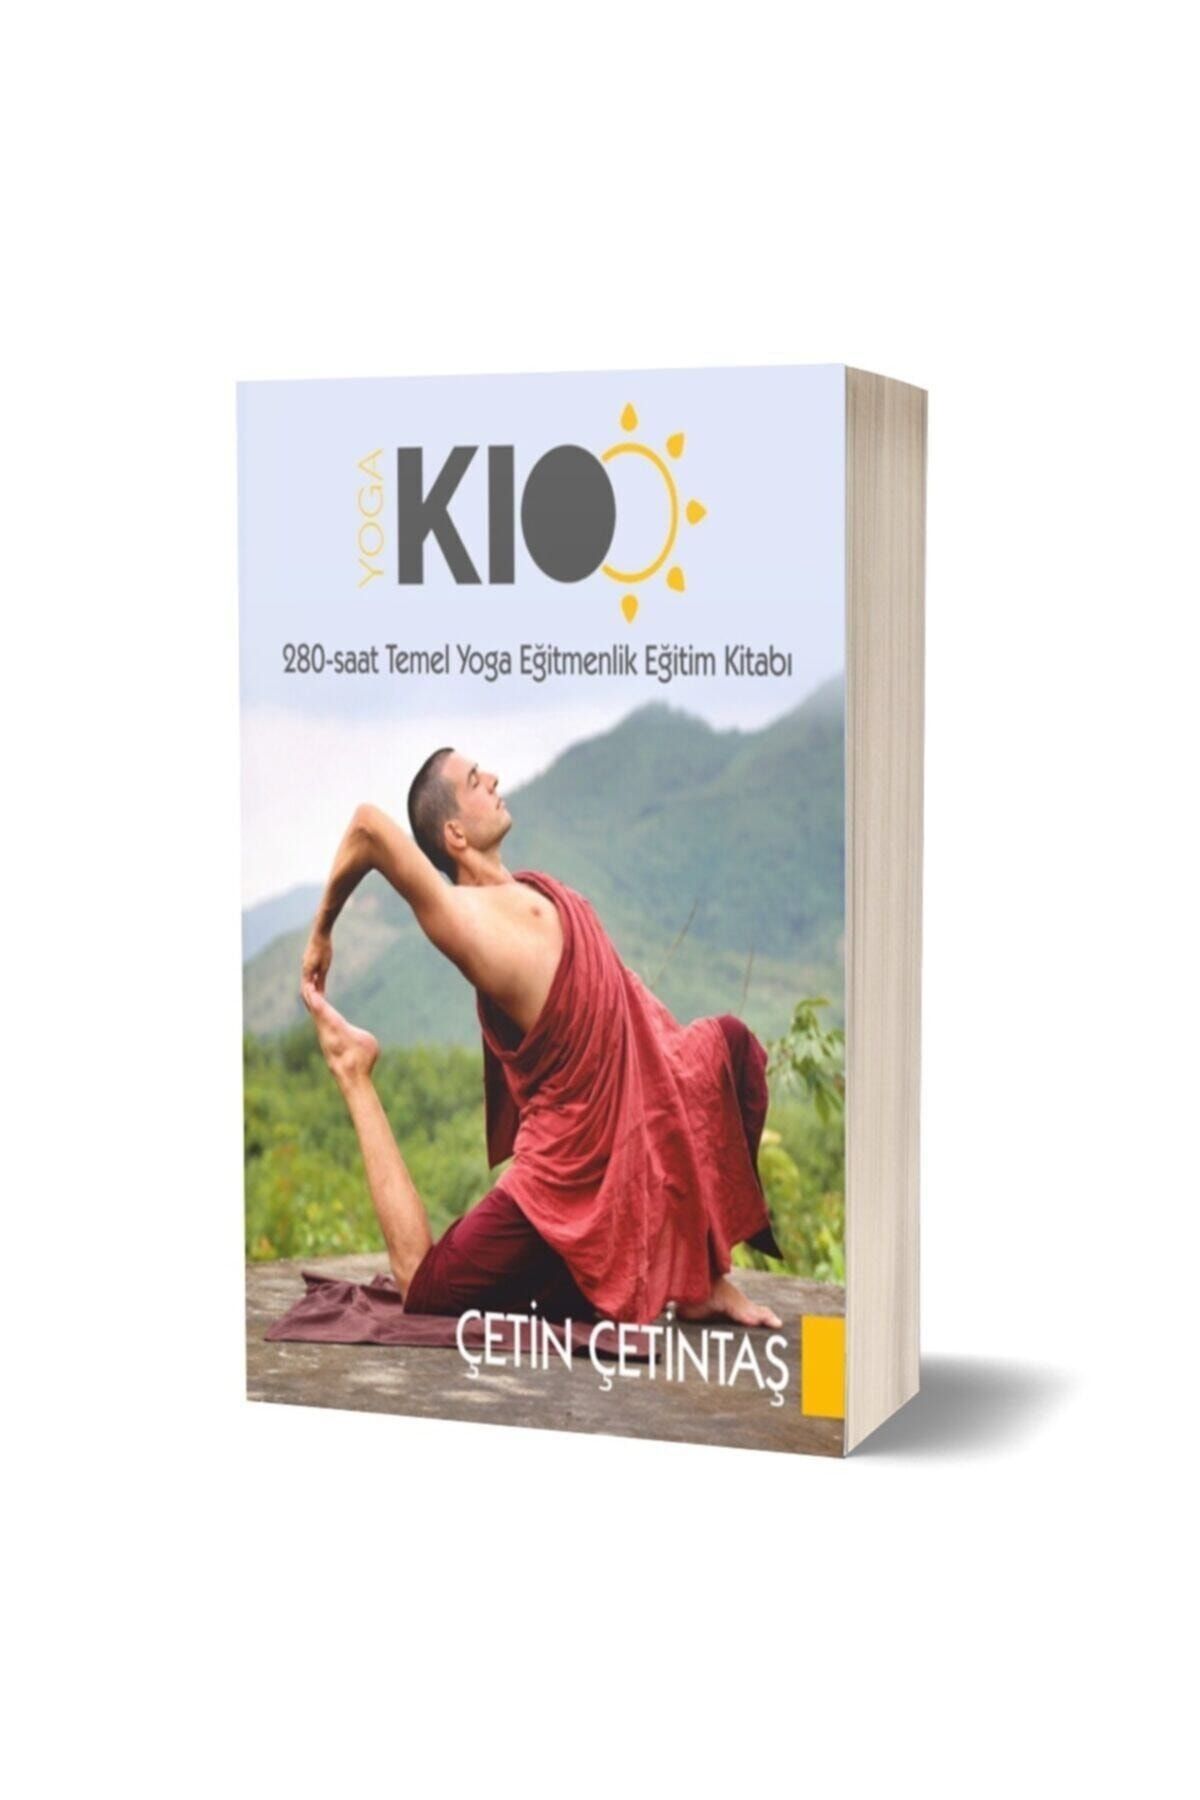 YogaKioo Temel Yoga Eğitmenlik Eğitimi Kitabı